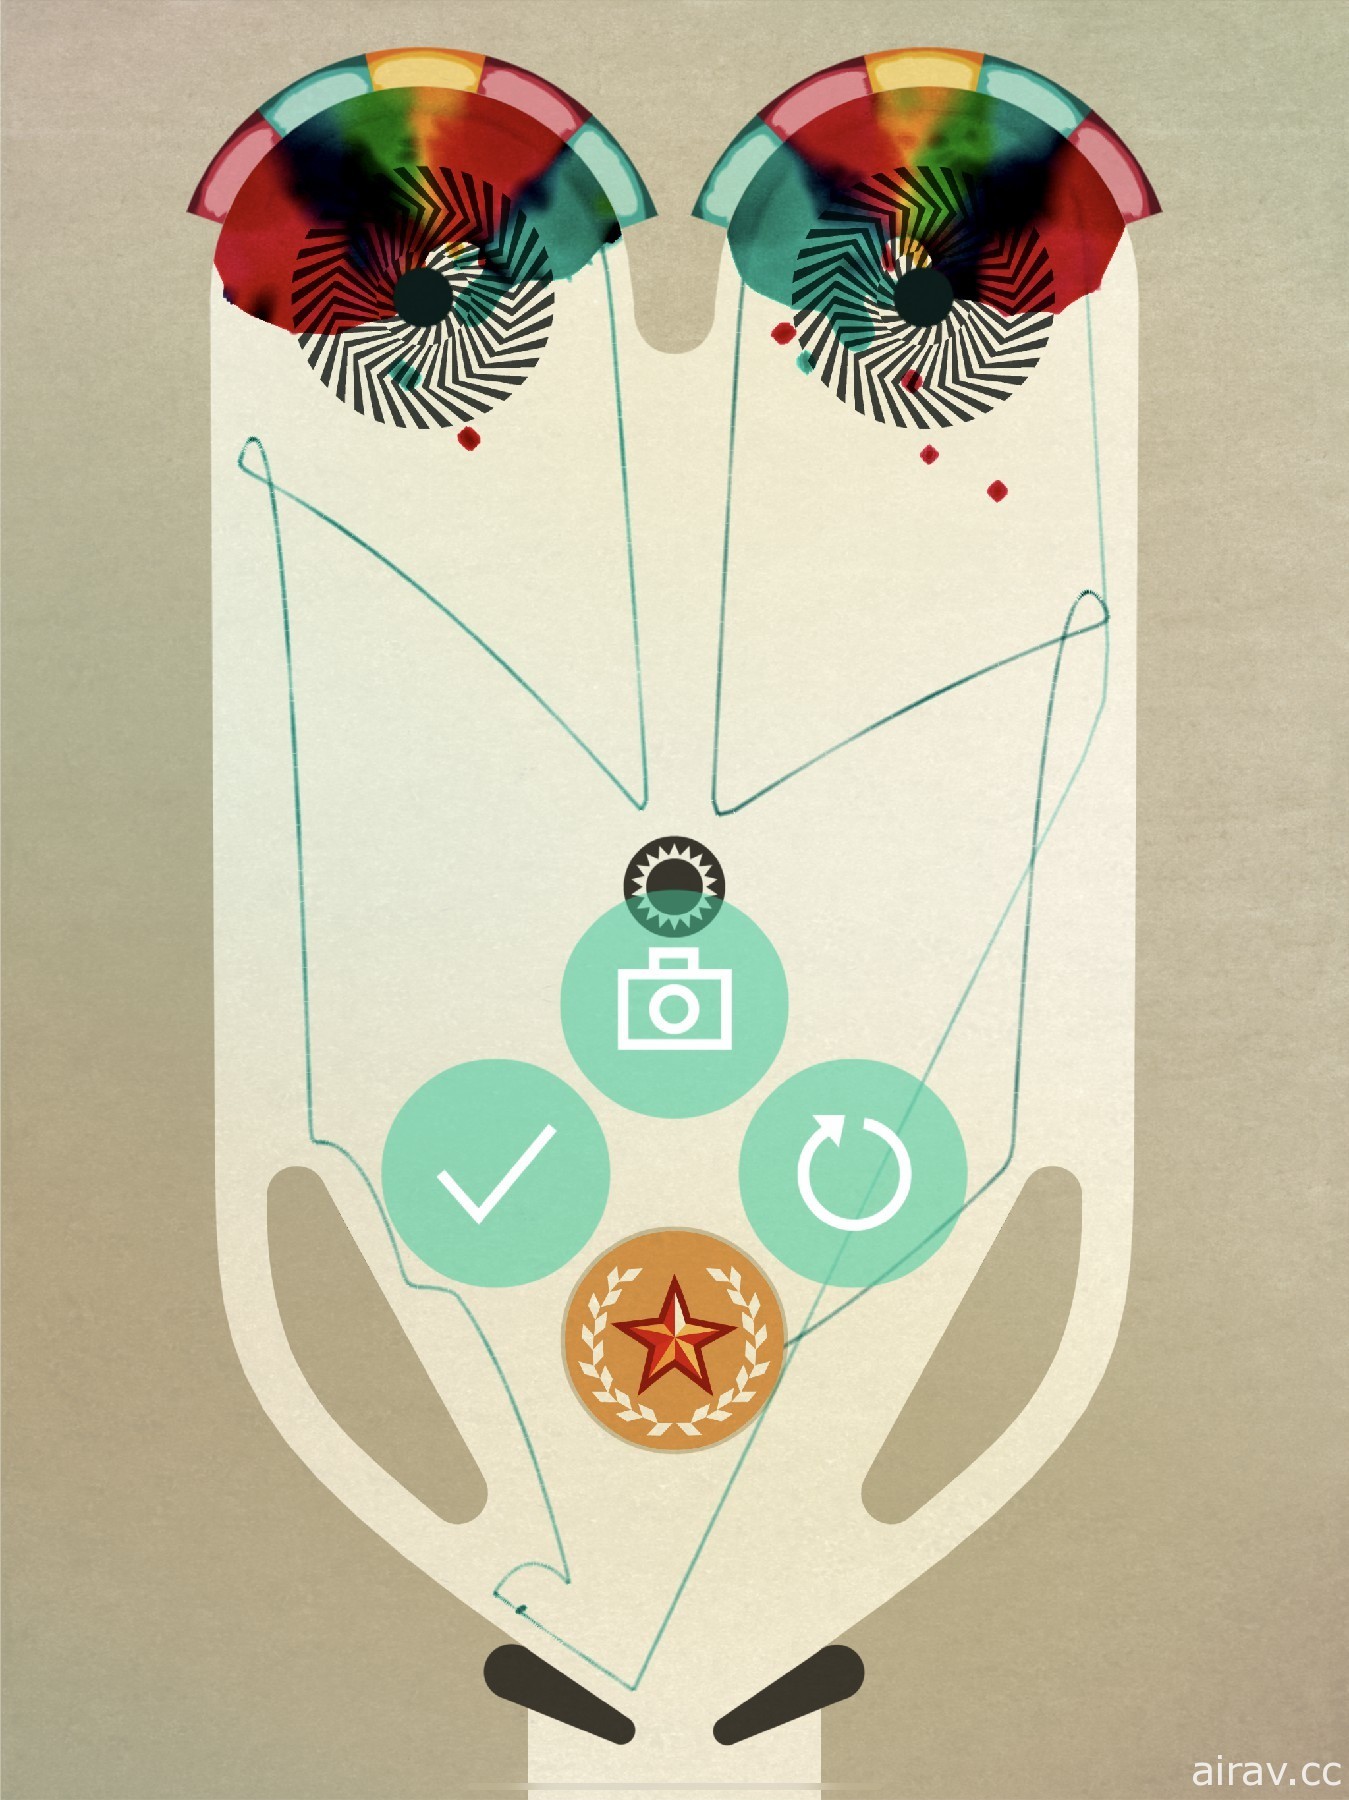 【試玩】《INKS.+》利用彈射軌跡創造個人的彈珠台藝術